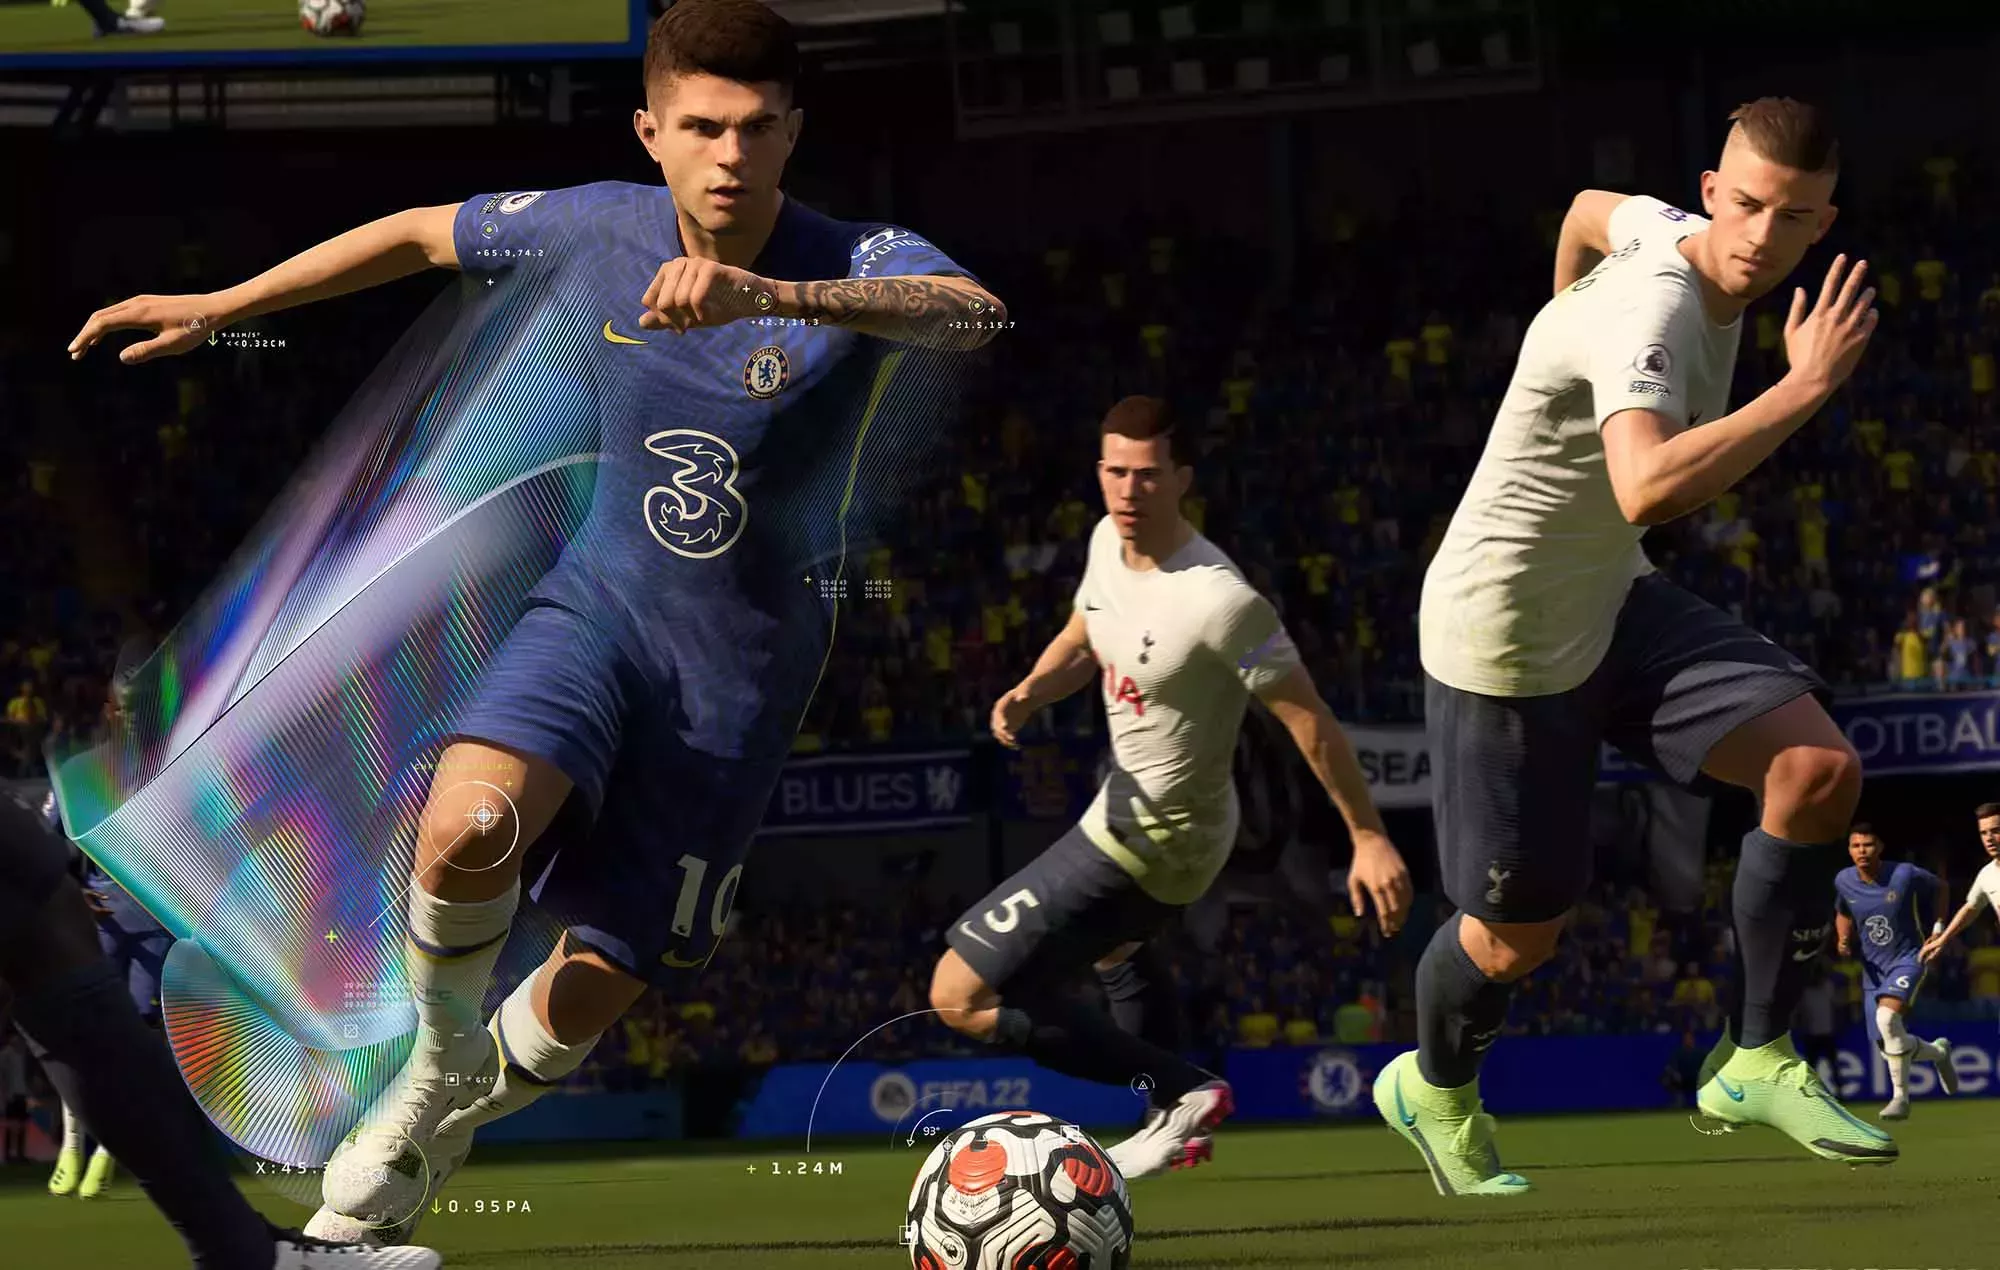 La FIFA y EA ponen fin a su colaboración y la serie 'FIFA' pasa a llamarse 'EA SPORTS FC'